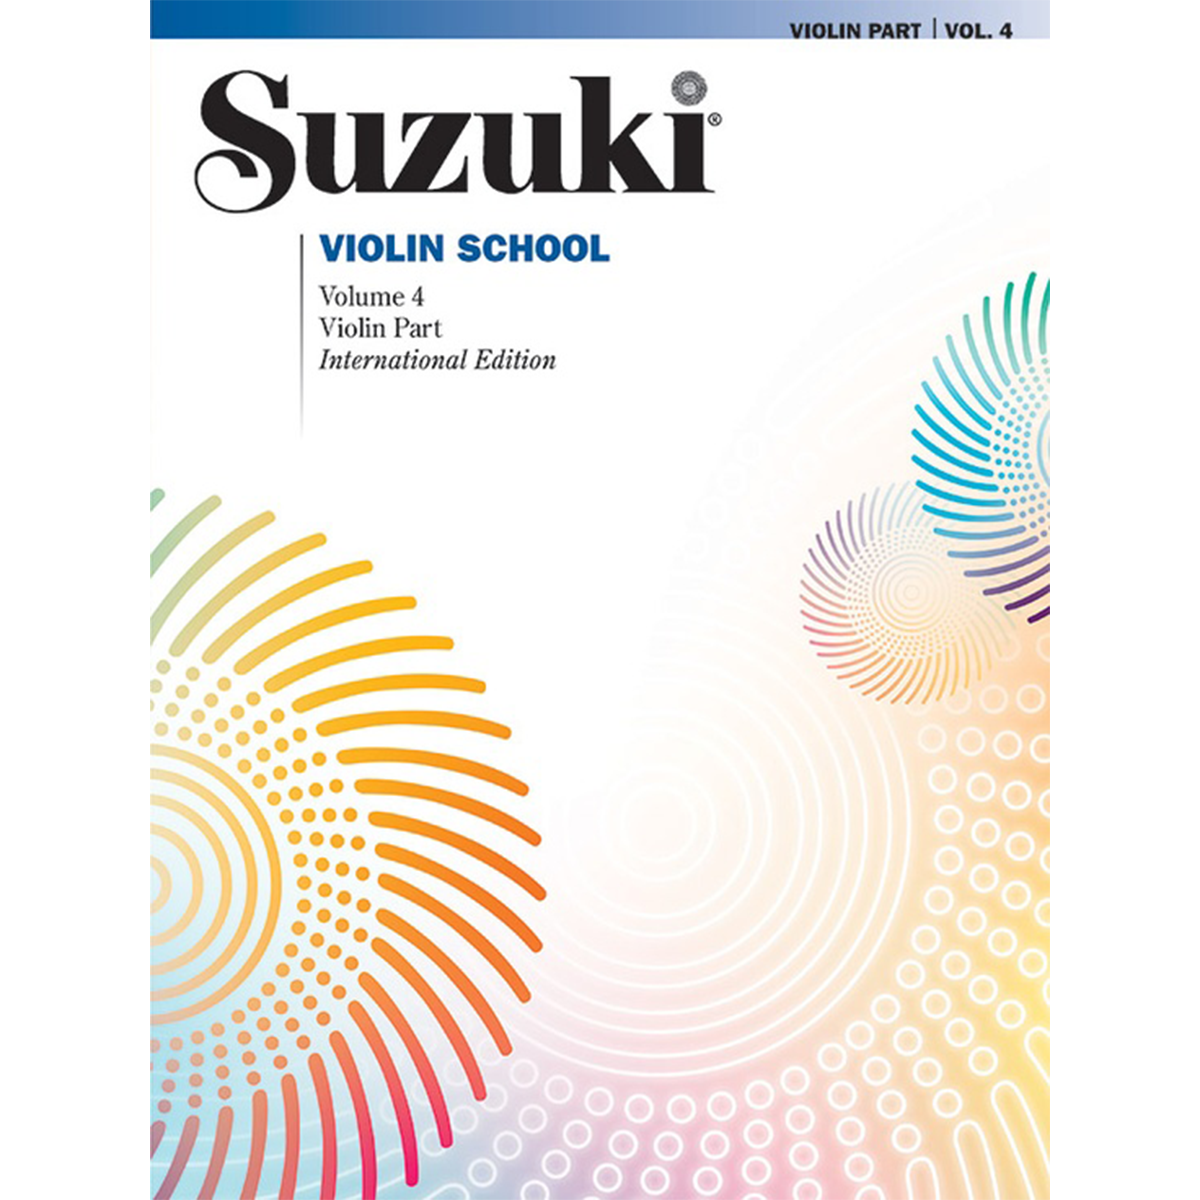 Suzuki Violin School: Violin Part, Vol. 5 in action